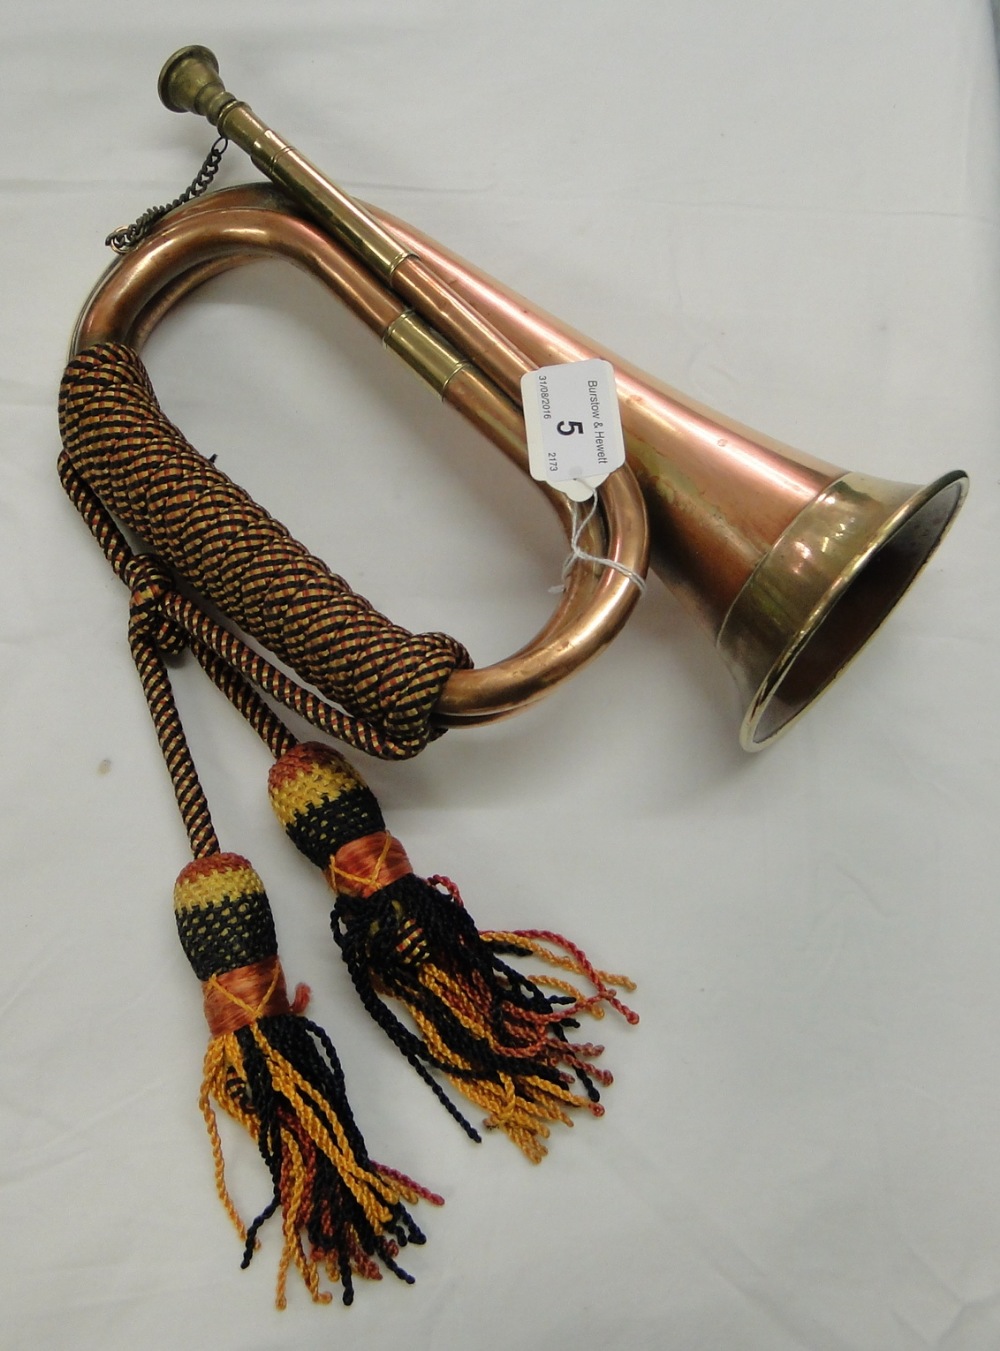 A copper and brass bugle.